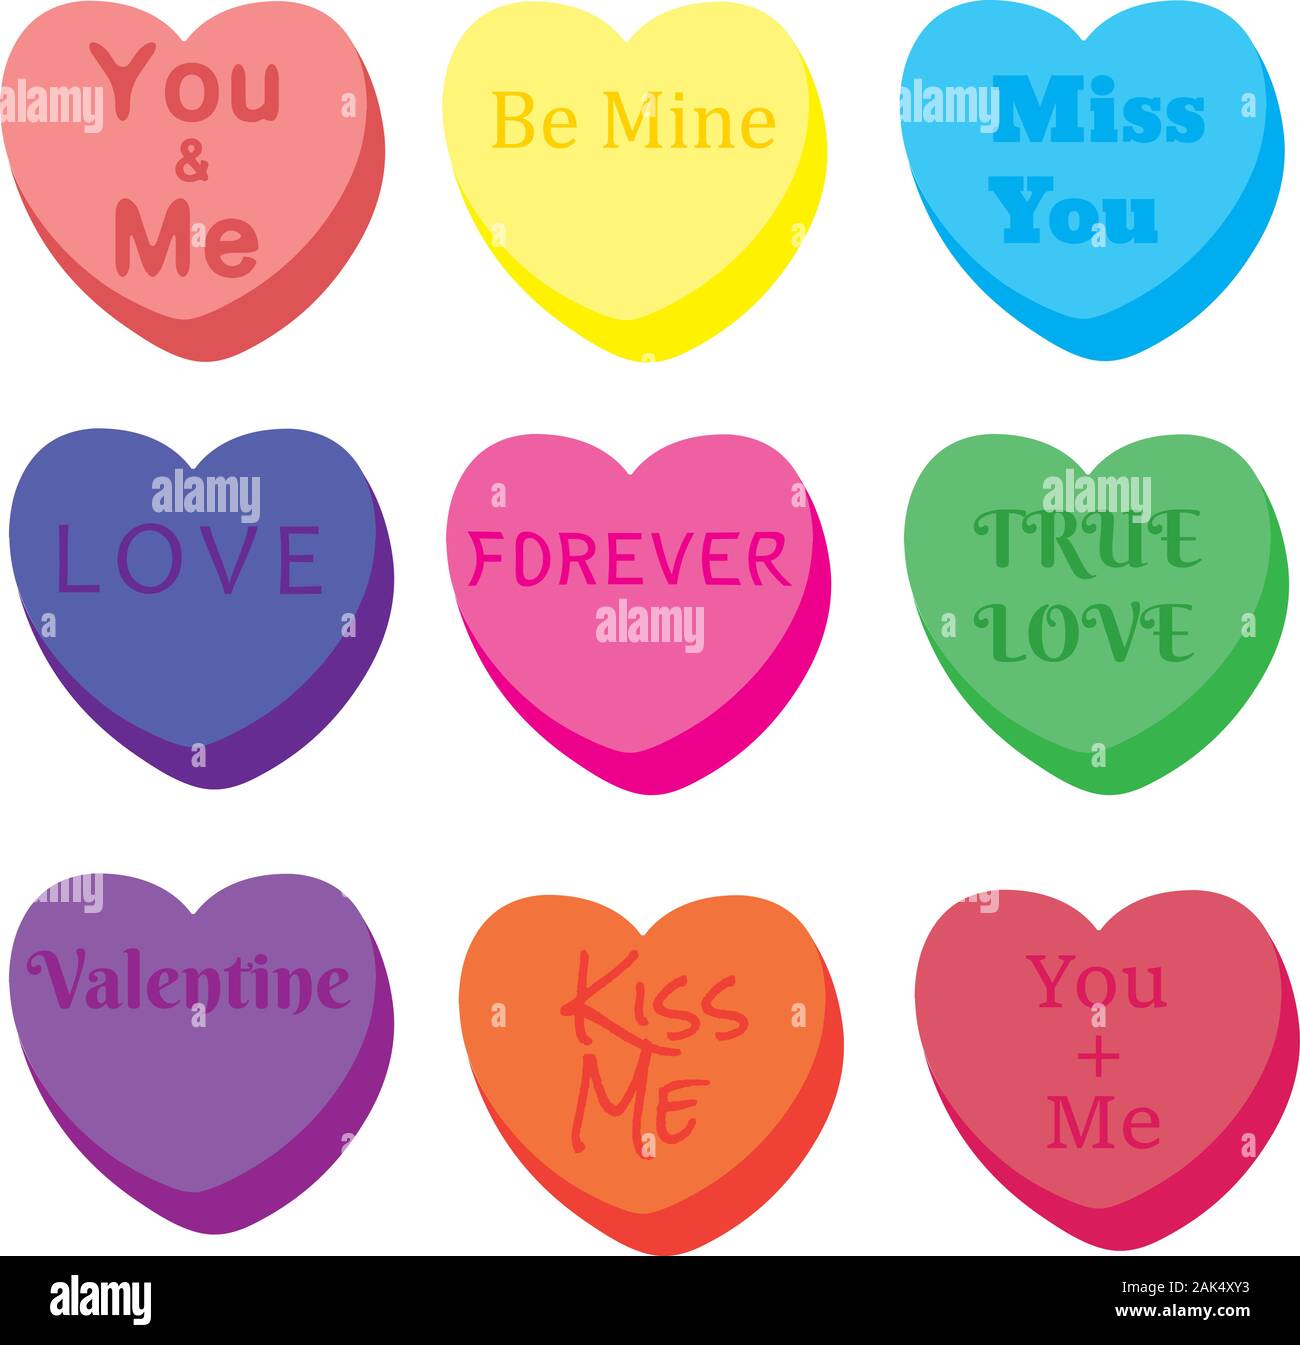 Descubrir 49+ imagen corazones de san valentin con frases